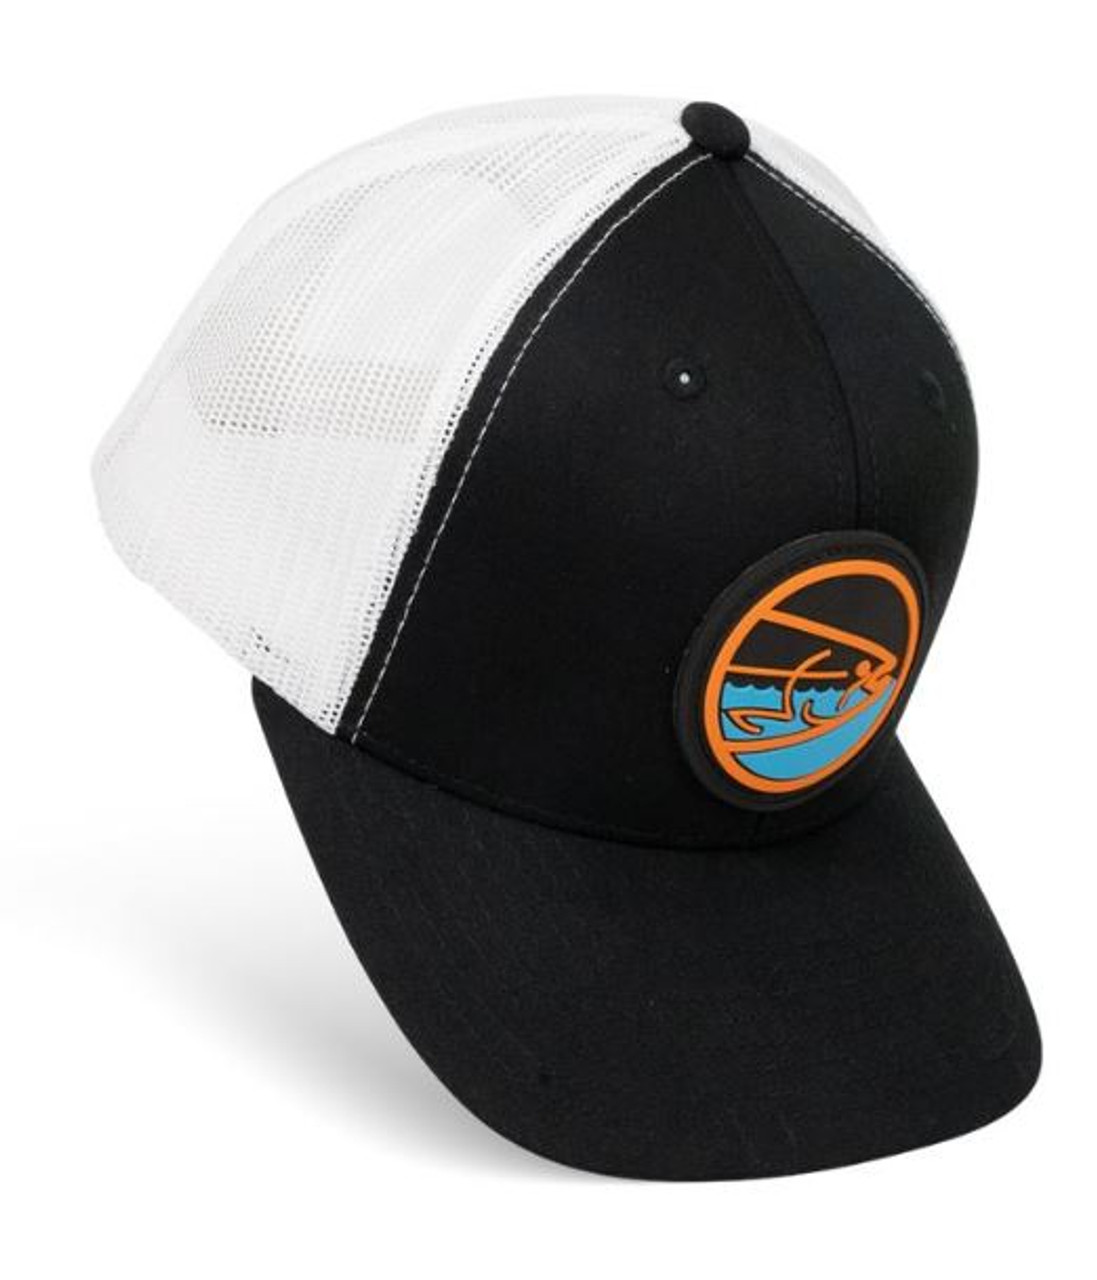 STLHD Shoreline Black/White Snapback Trucker Hat